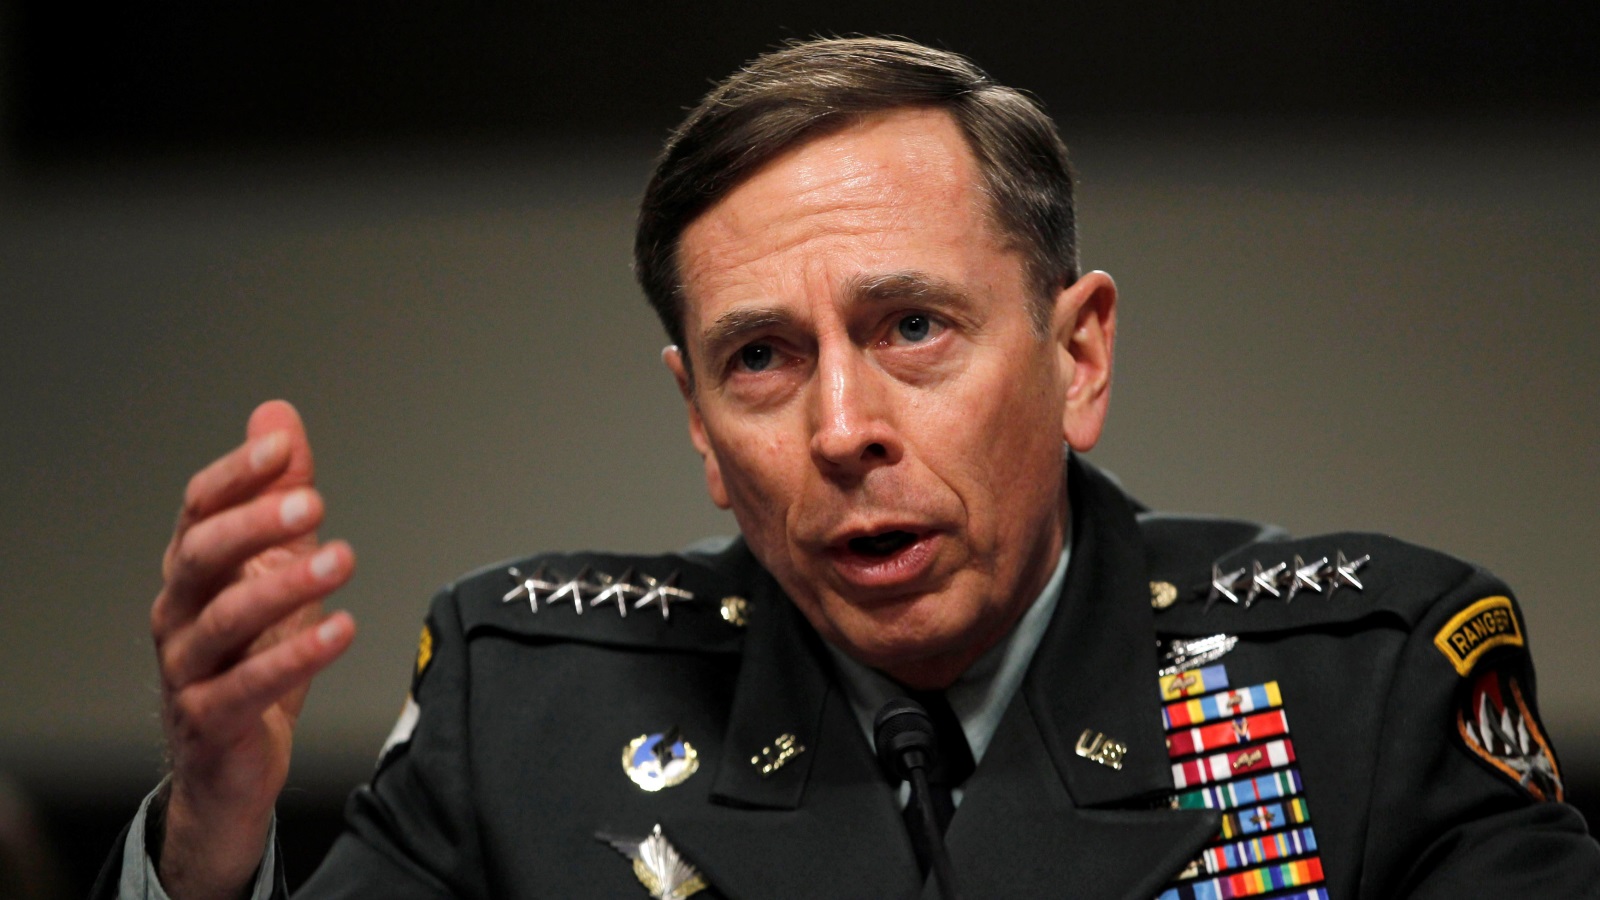  الجنرال ديفيد بترايوس، قائد قوة المساعدة الأمنية الدولية وقائد القوات الأمريكية في أفغانستان (رويترز)